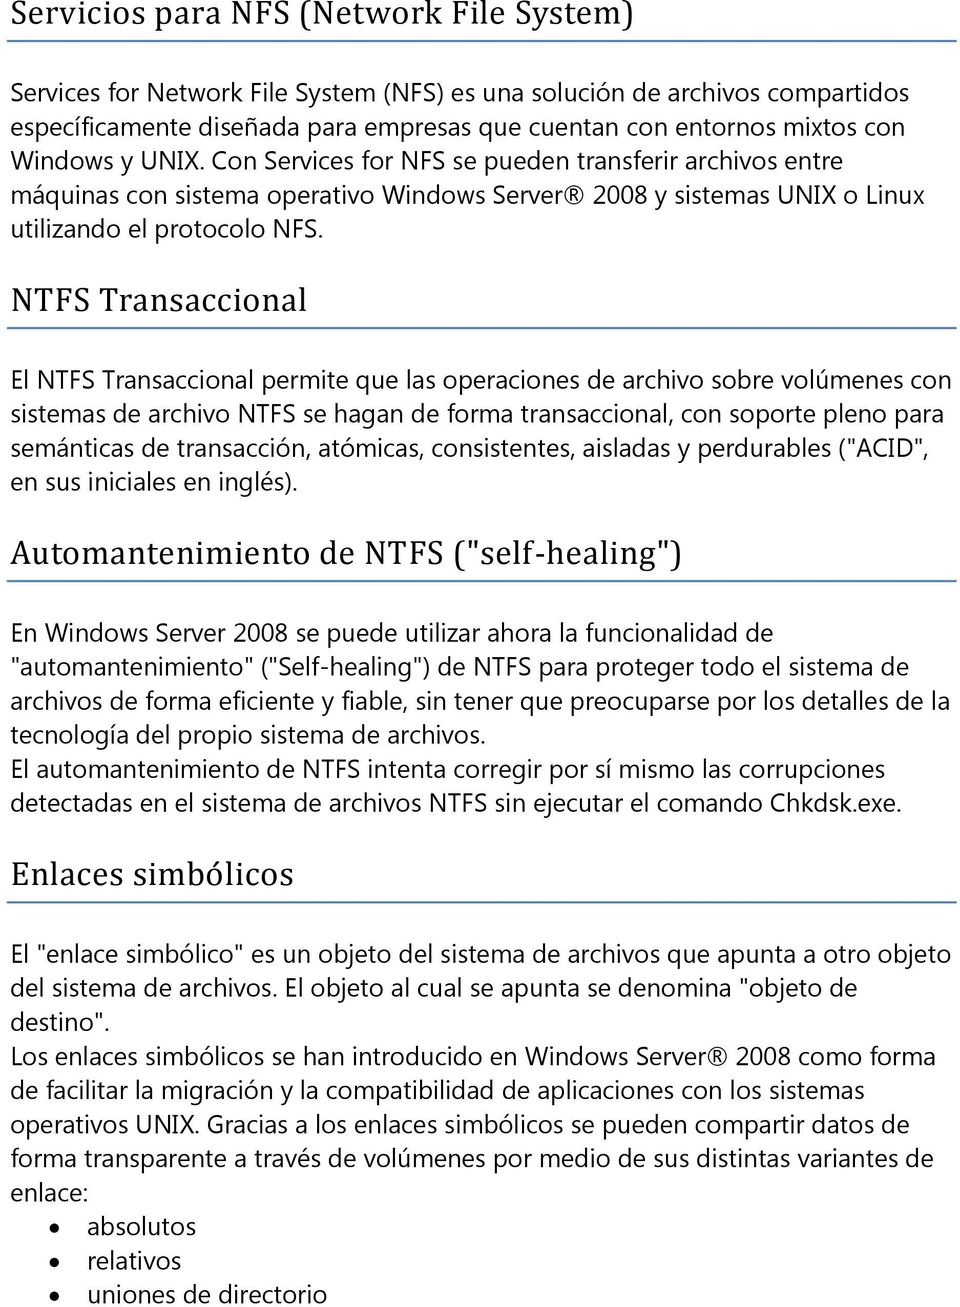 NTFS Transaccional El NTFS Transaccional permite que las operaciones de archivo sobre volúmenes con sistemas de archivo NTFS se hagan de forma transaccional, con soporte pleno para semánticas de